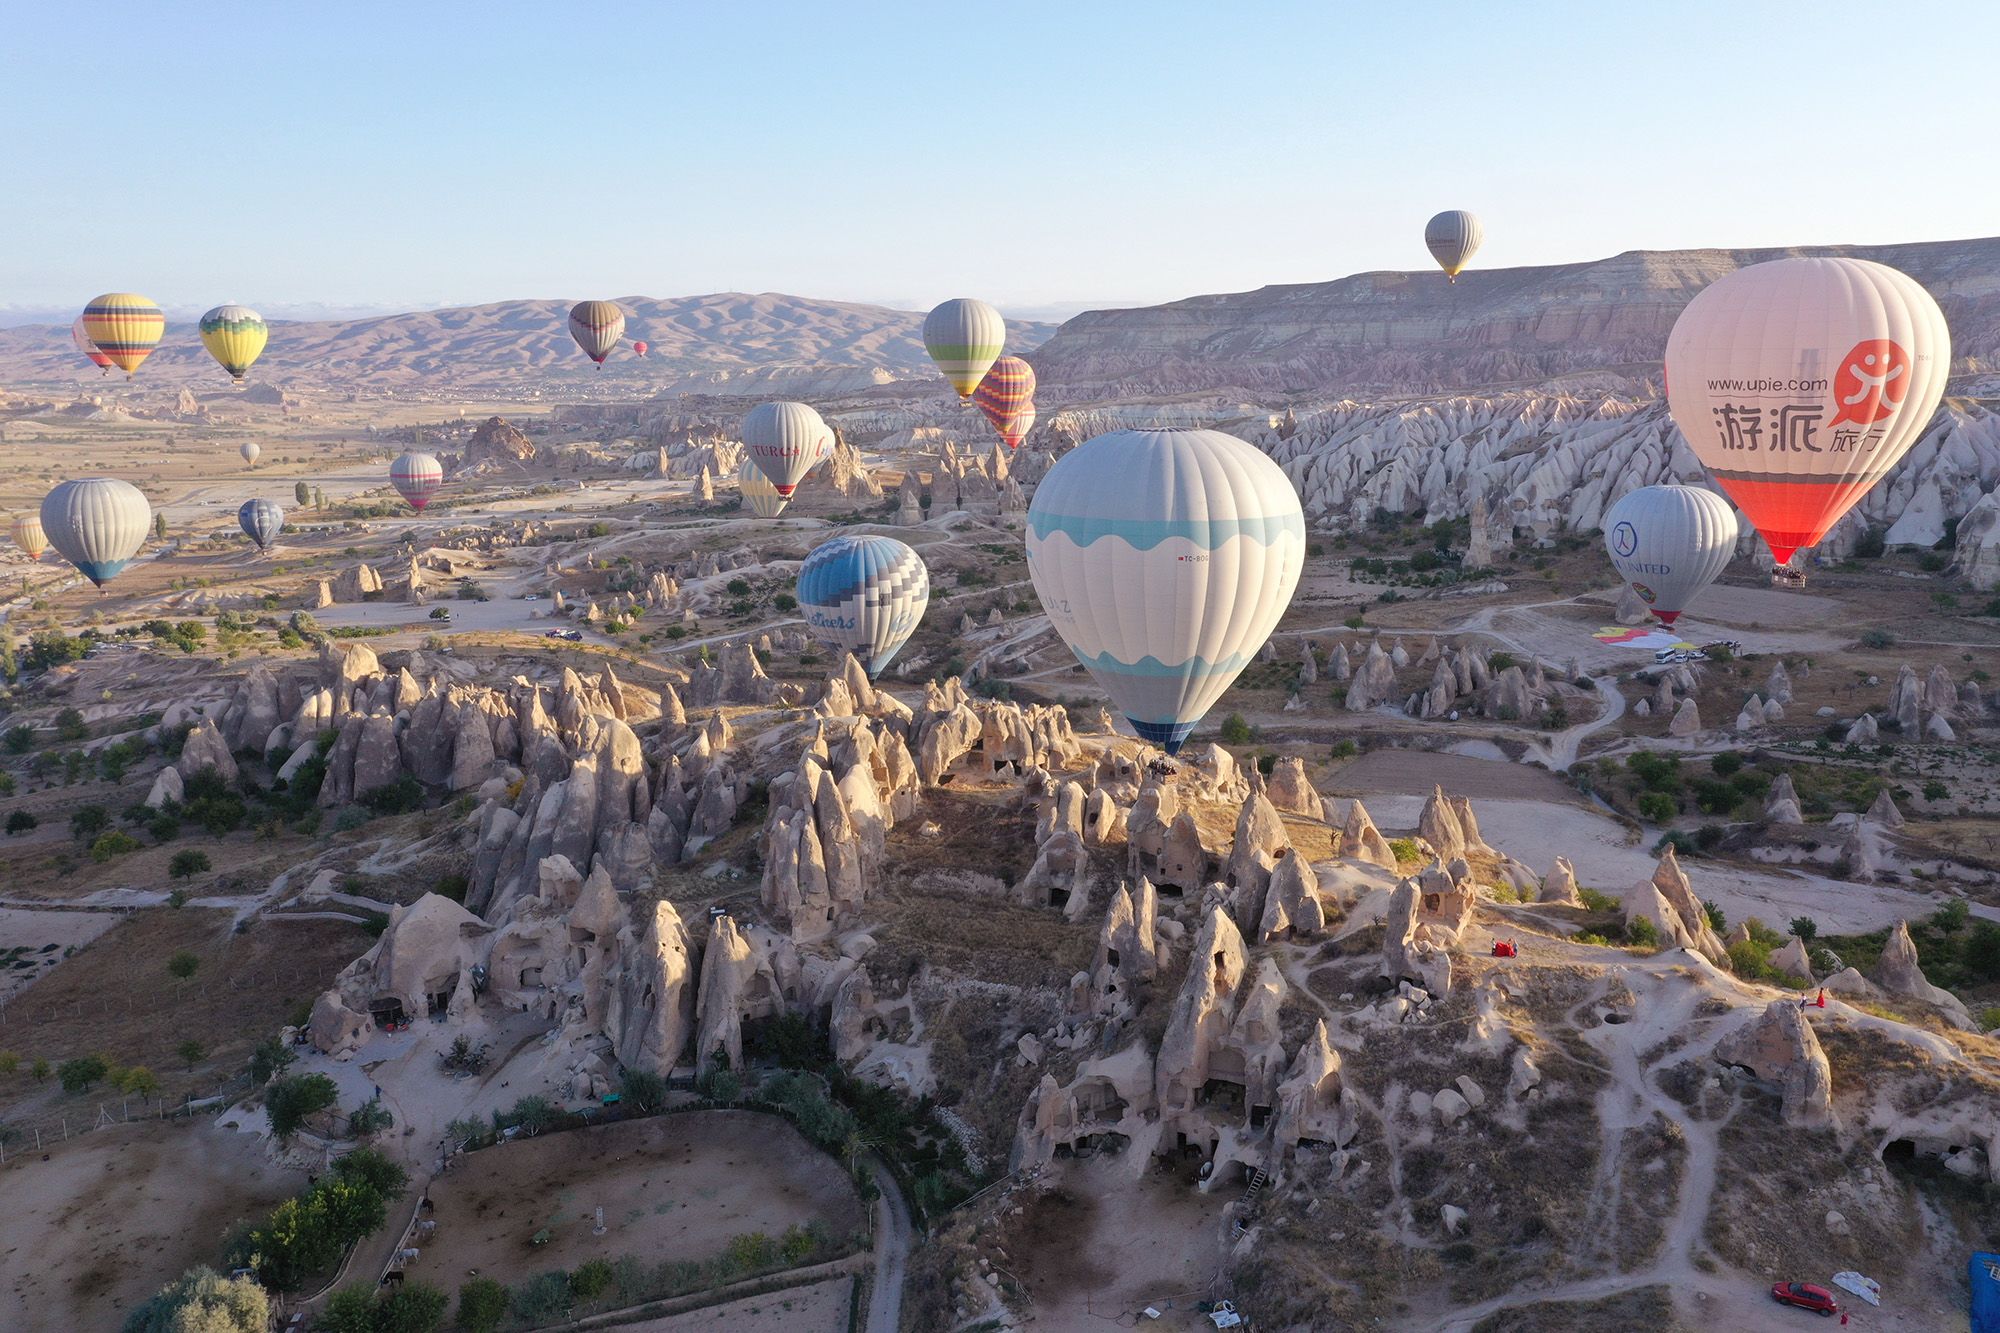 Gentleman vriendelijk ontploffing Verzoekschrift Two Spanish tourists killed in hot air balloon landing in Turkey | CNN